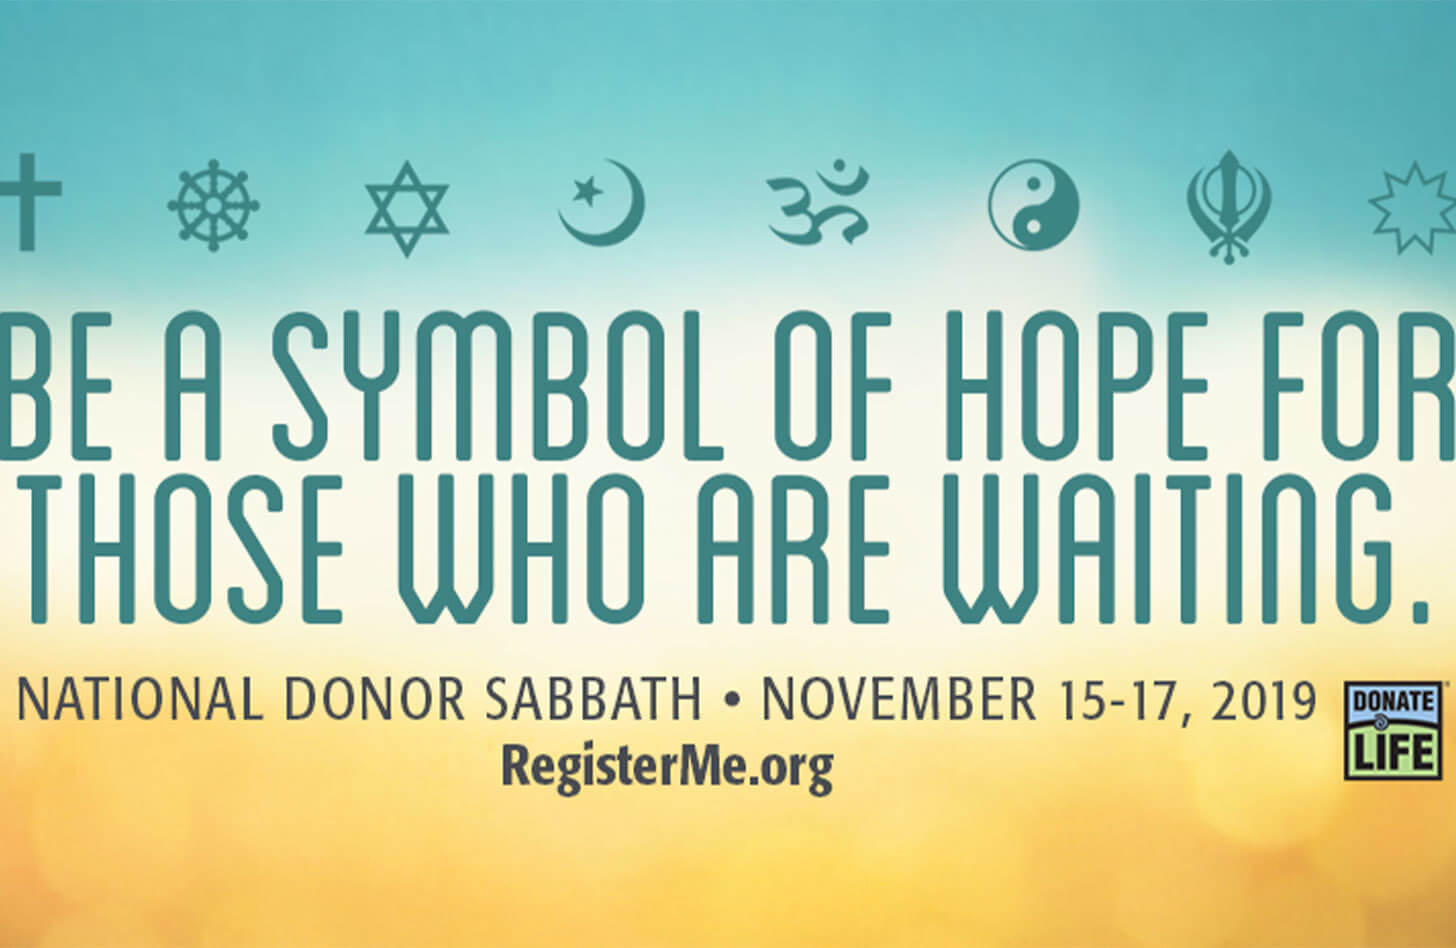 National Donor Sabbath